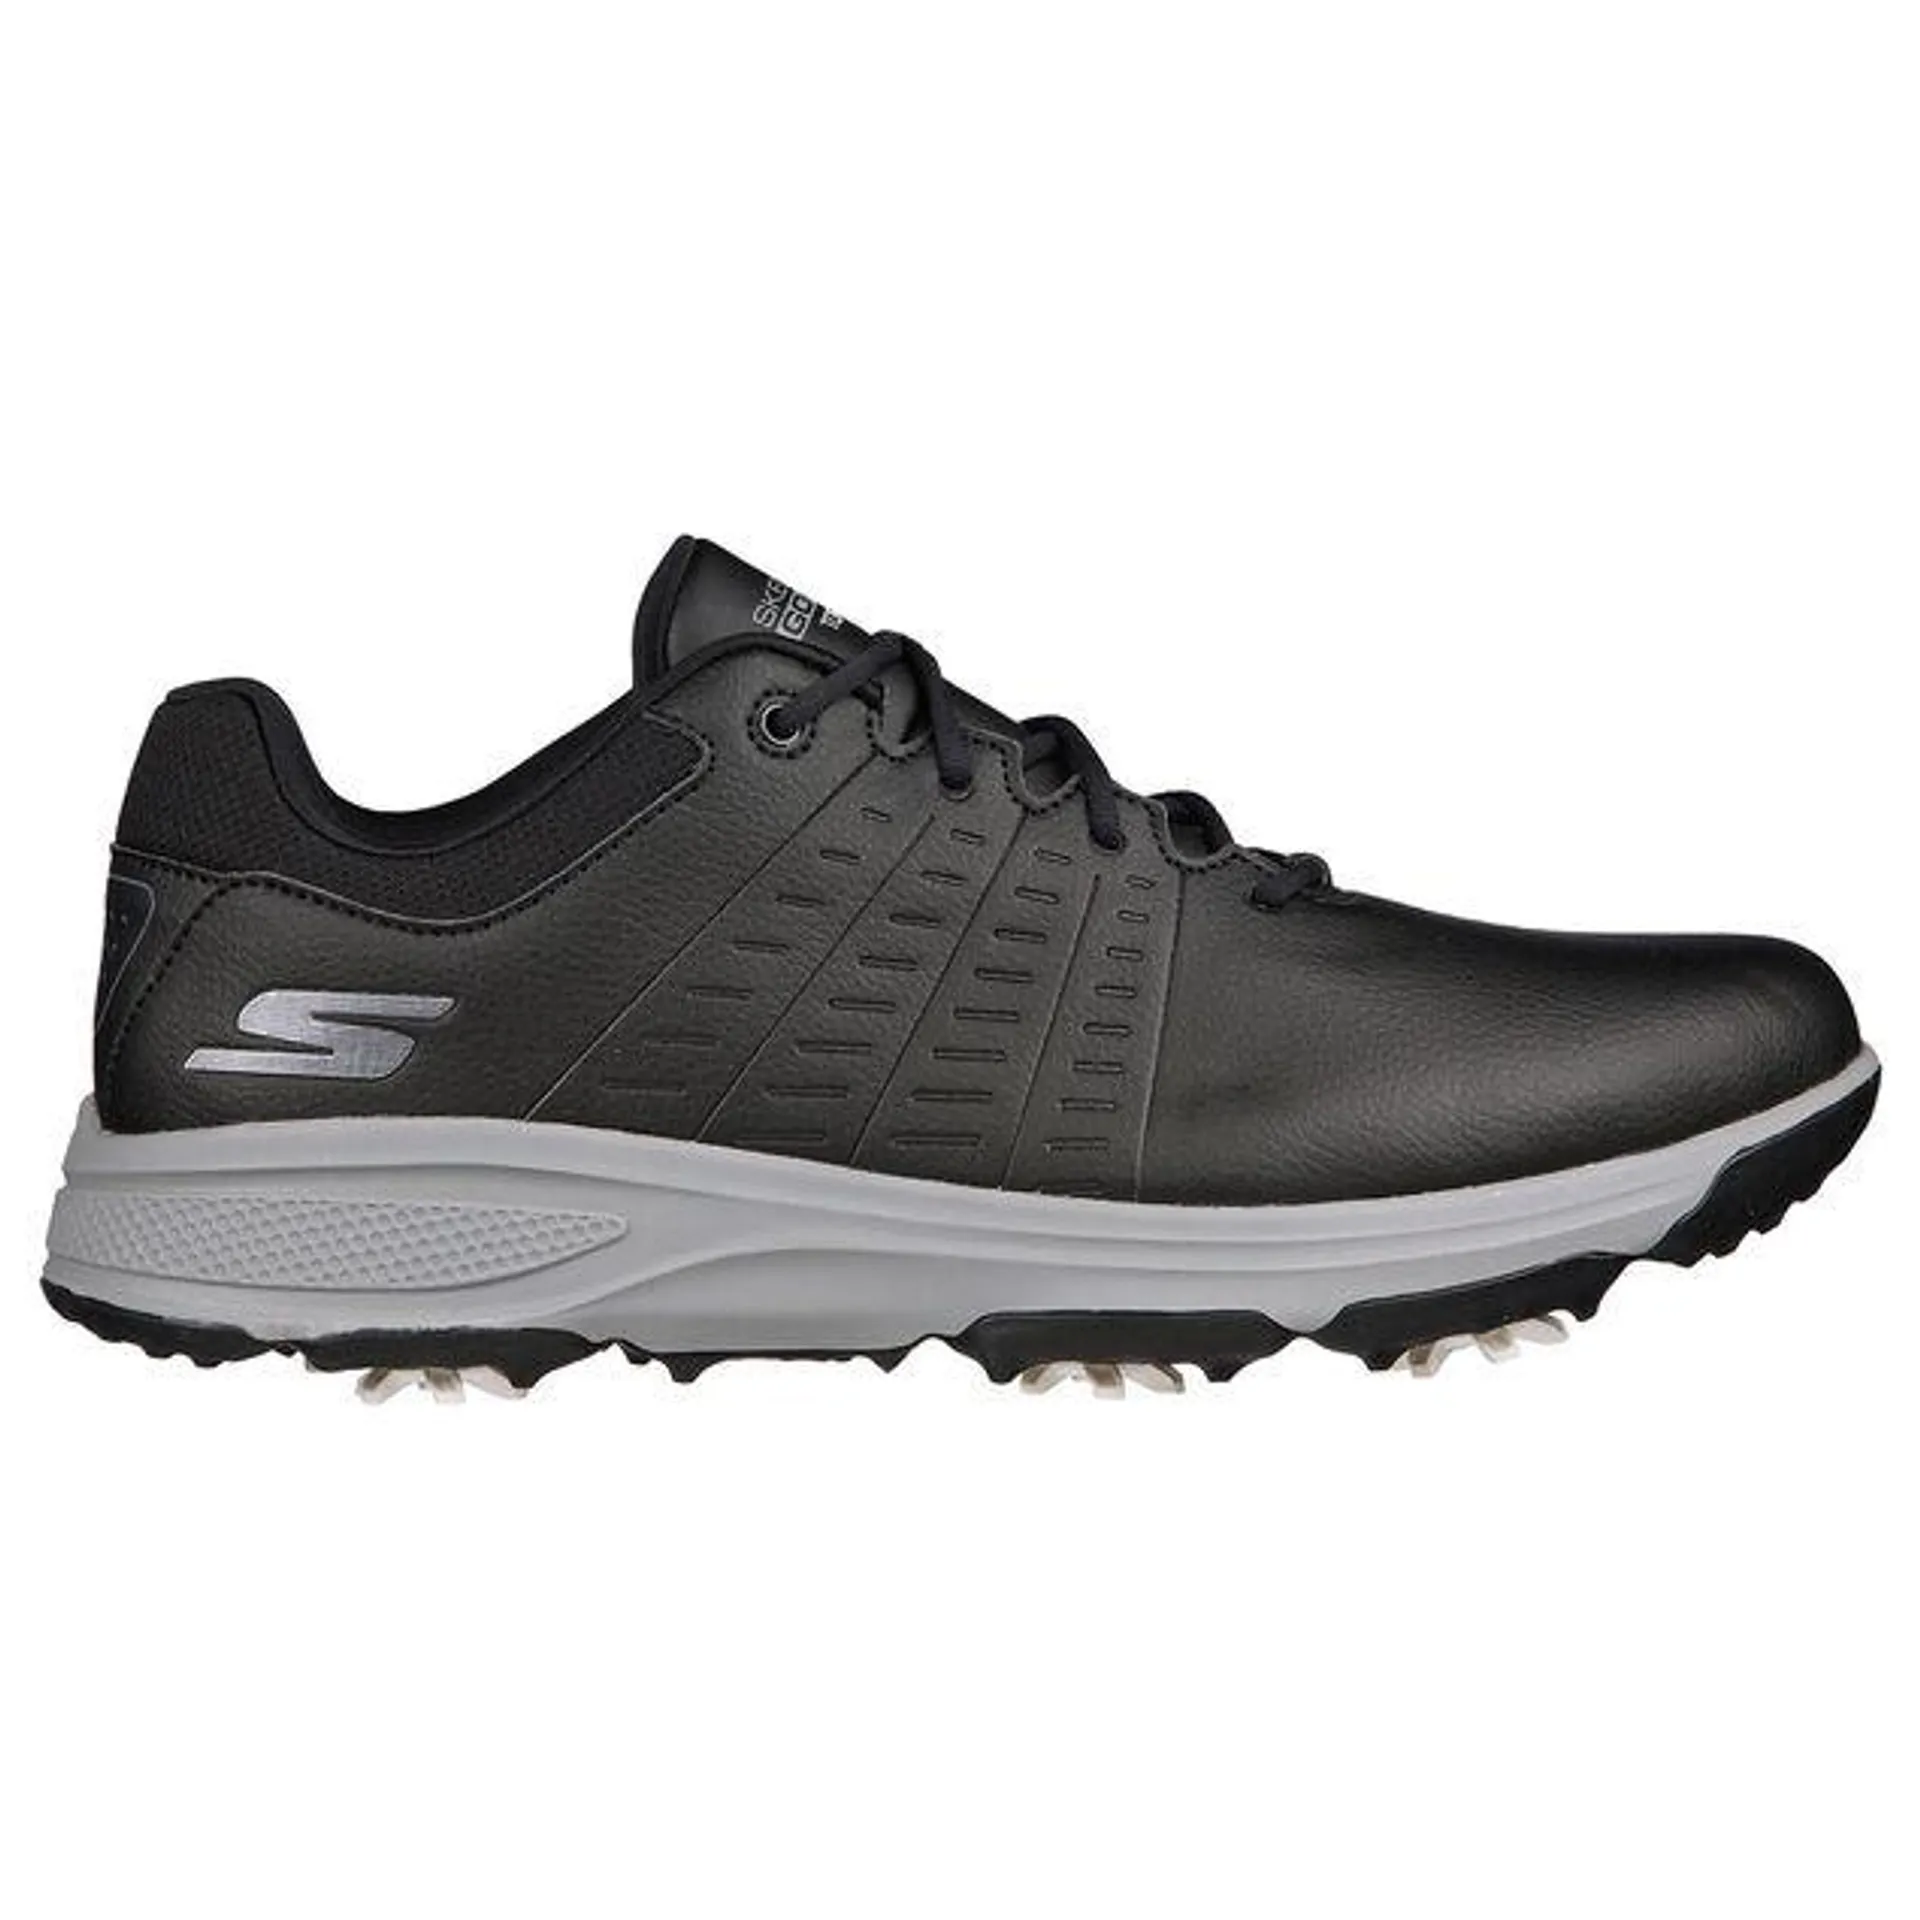 Skechers Men's GO Torque 2 Waterproof Spiked Golf Shoes